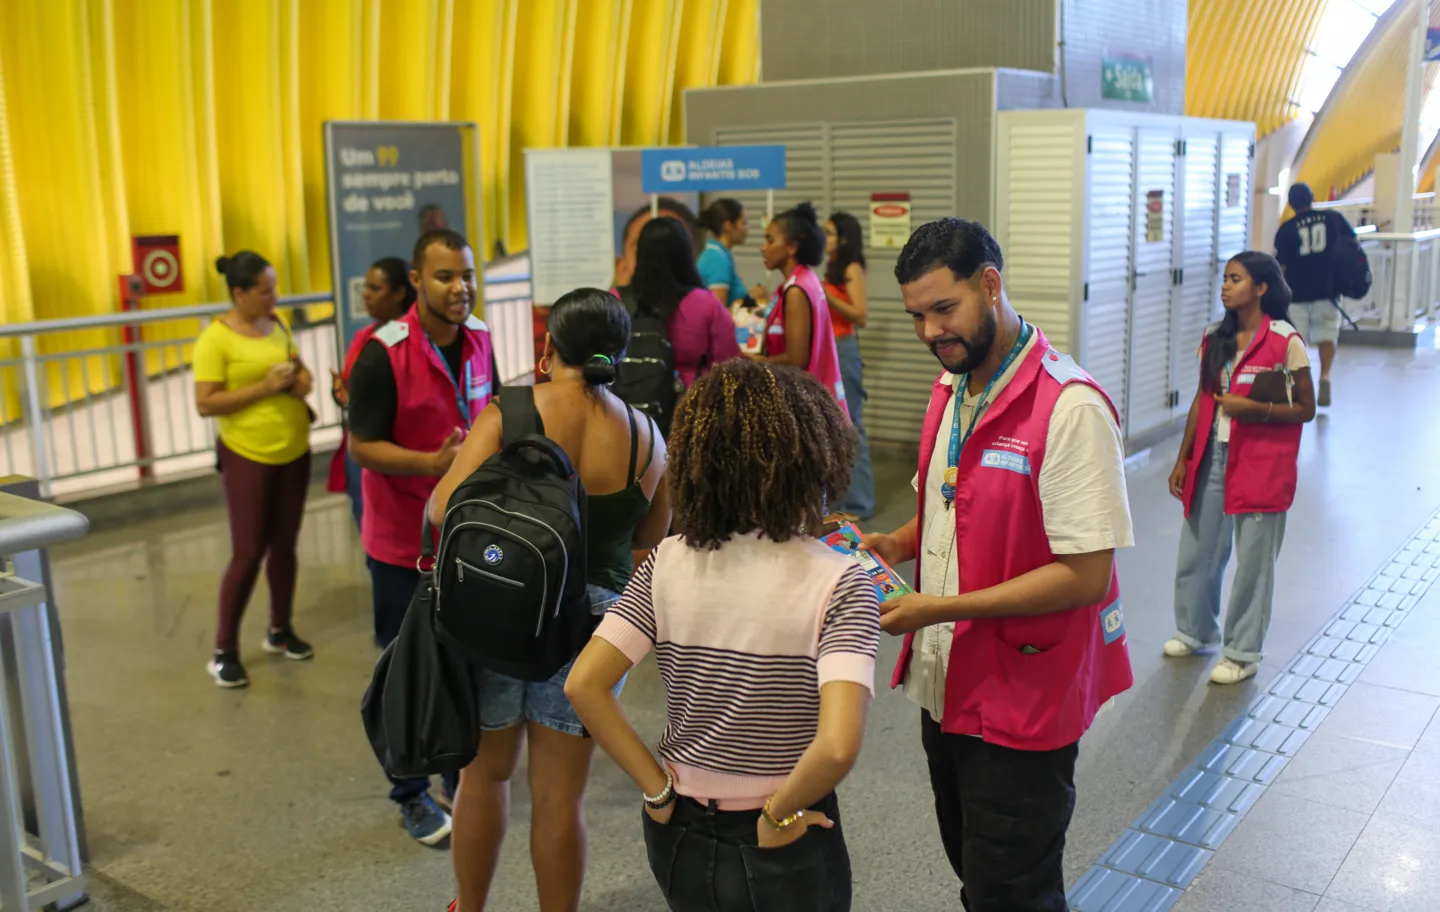 A organização Aldeias Infantis SOS está promove uma campanha de conscientização sobre cuidados com a infância e juventude em estandes montados nas estações de metrô de Salvador